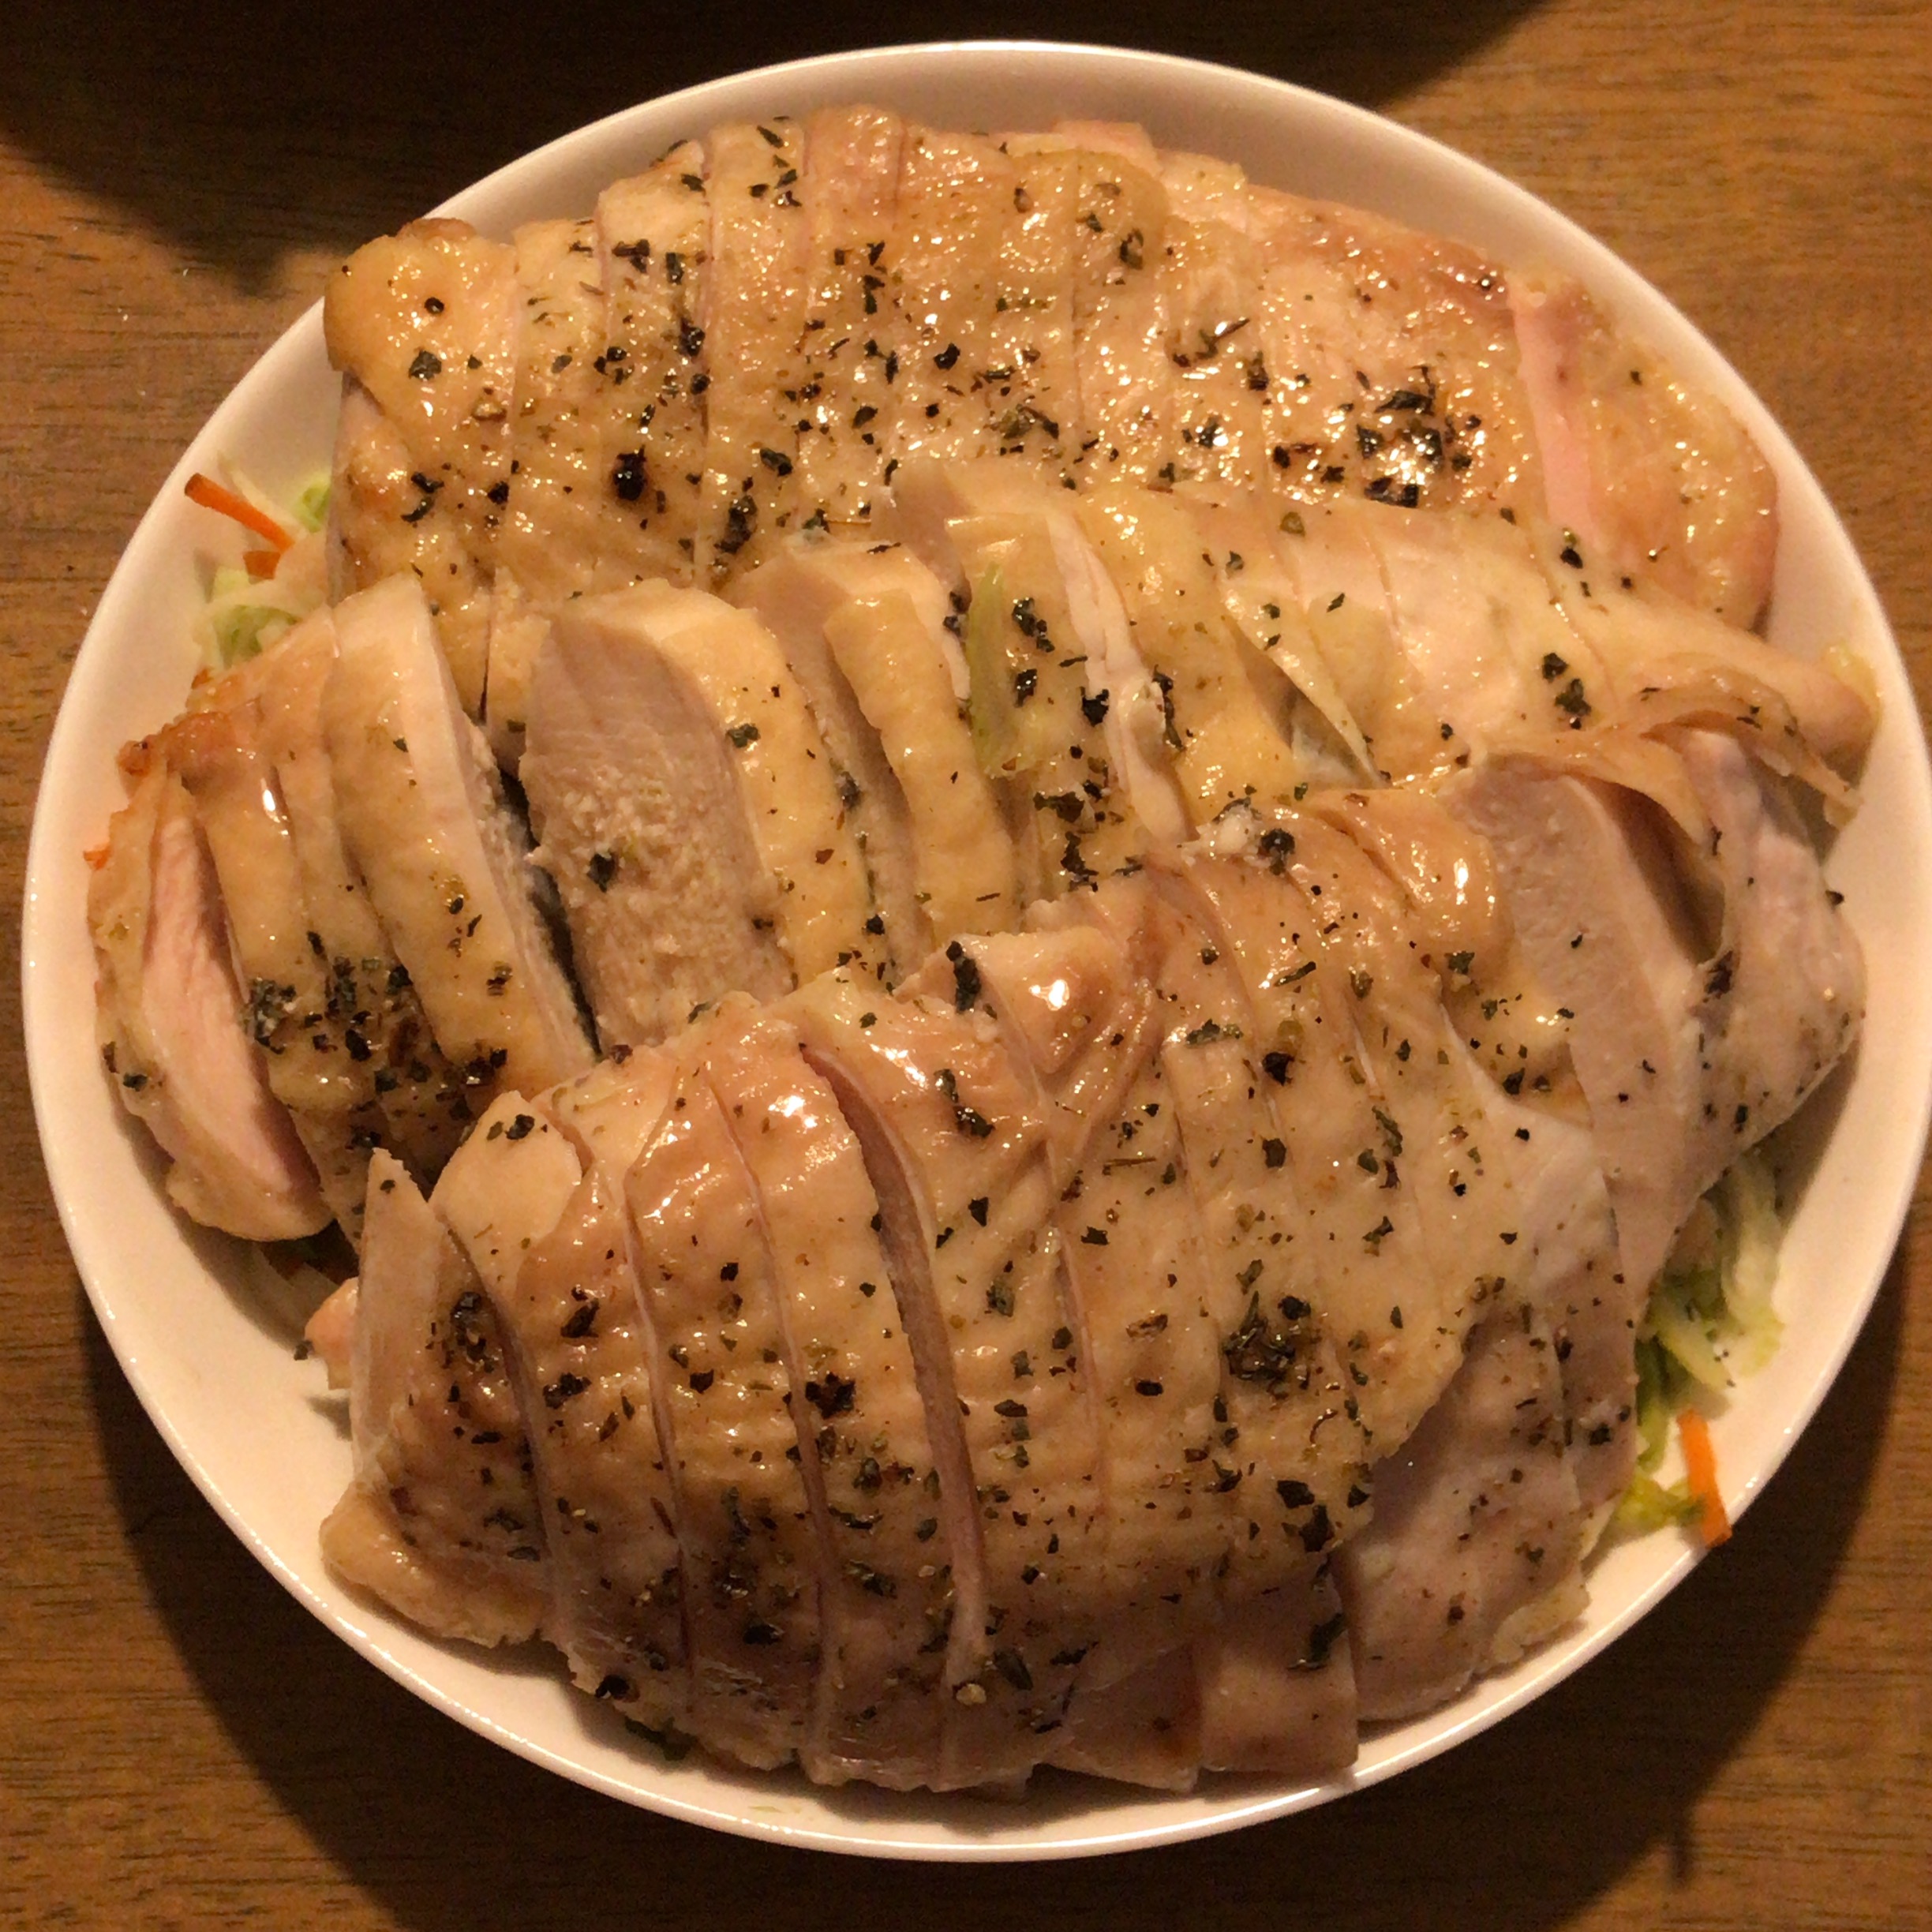 ズボラおやじの簡単レシピ 109 鶏むね肉のローストチキン 過去最高の美味 マルチ クリエイティブライフ